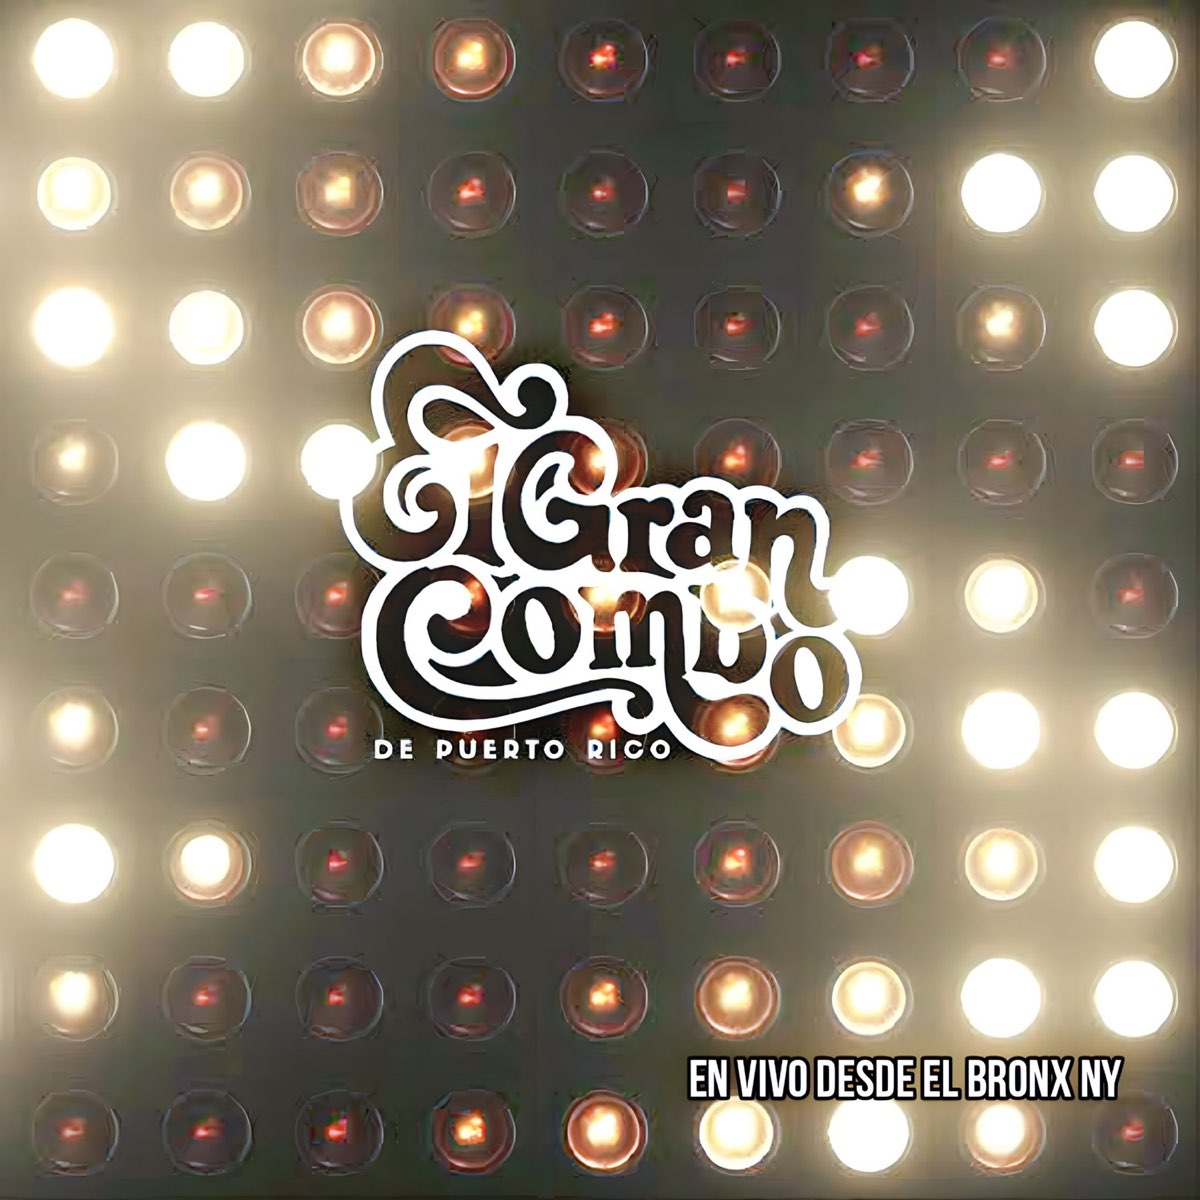 En Vivo Desde el Bronx Ny - Album by El Gran Combo de Puerto Rico - Apple  Music